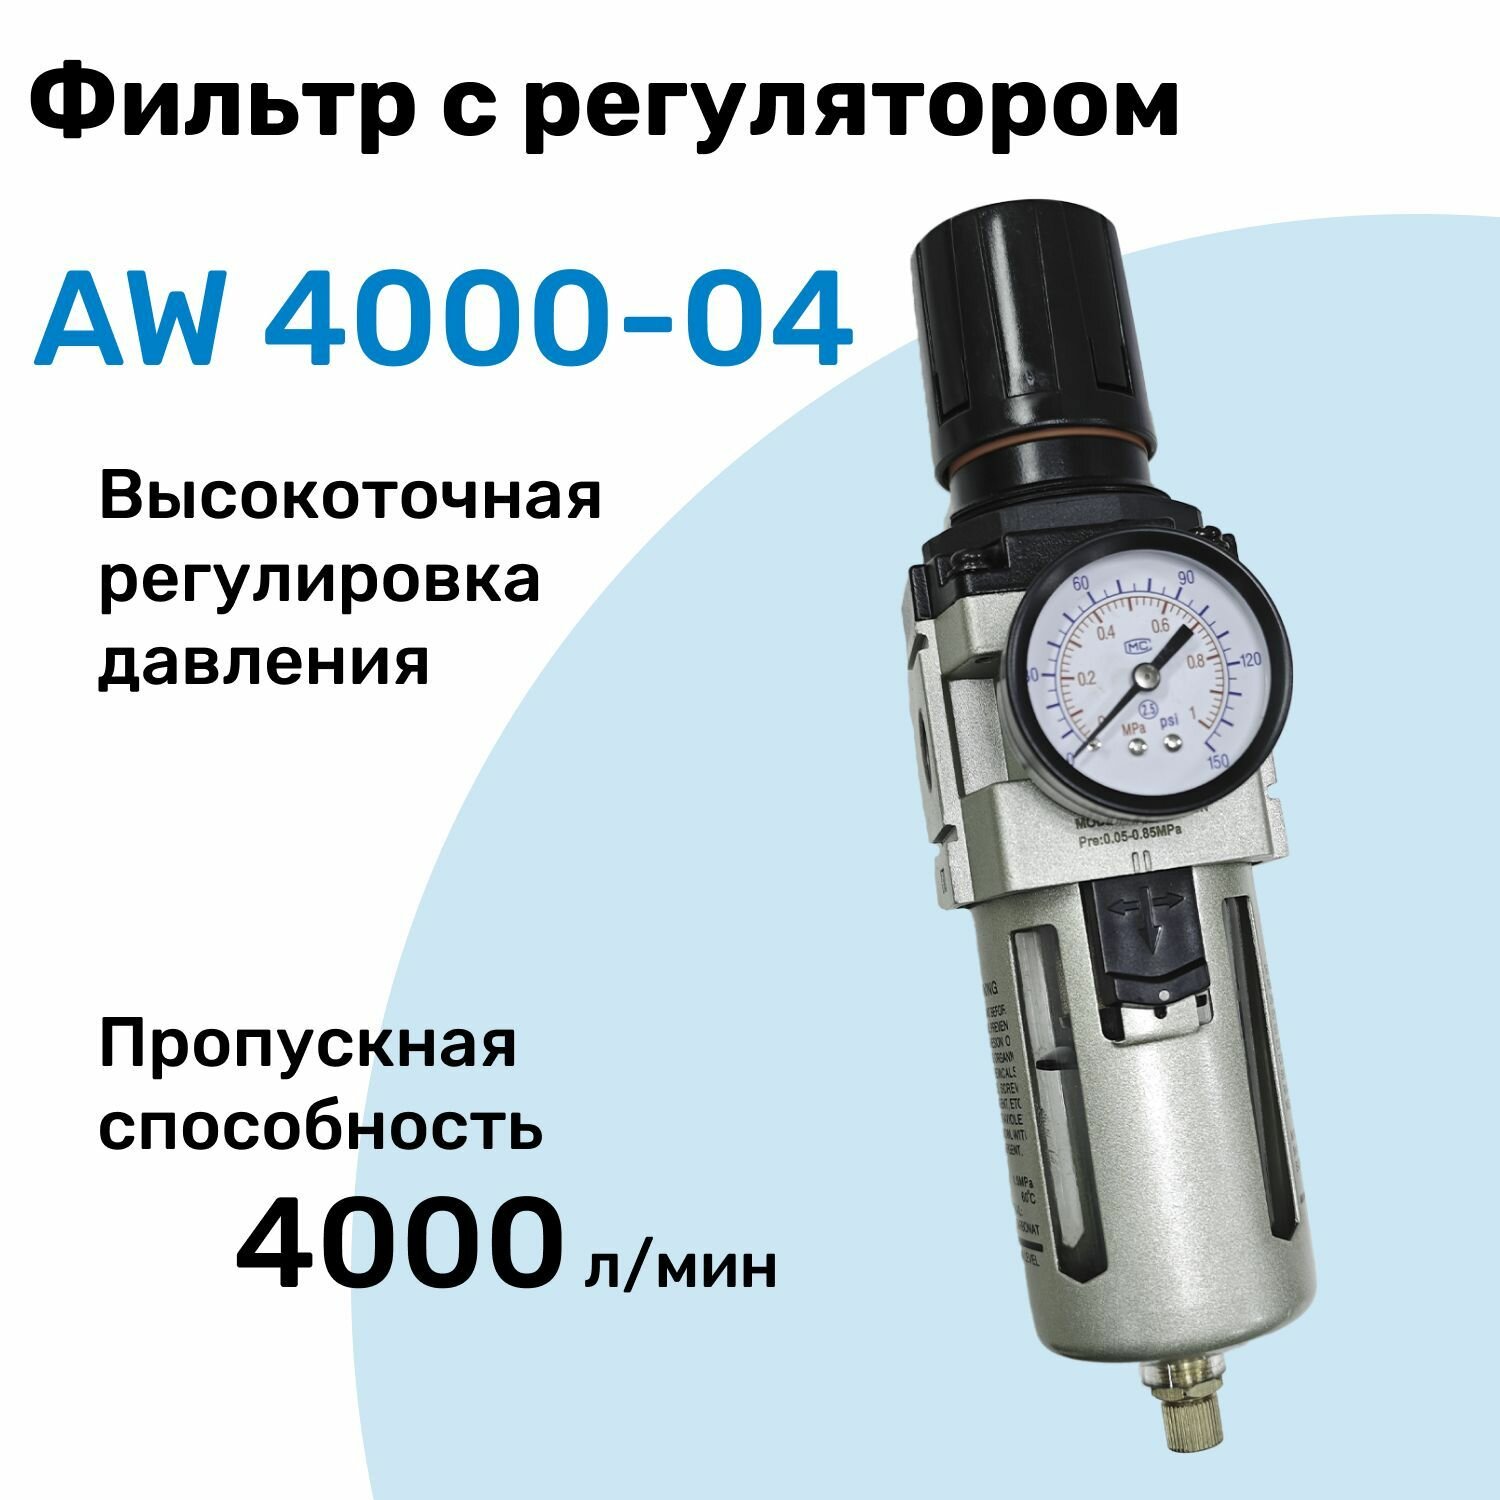 Фильтр с регулятором AW 4000-04, R1/2", Очистка 25мкм, Съемный манометр, Профессиональный Блок подготовки воздуха NBPT